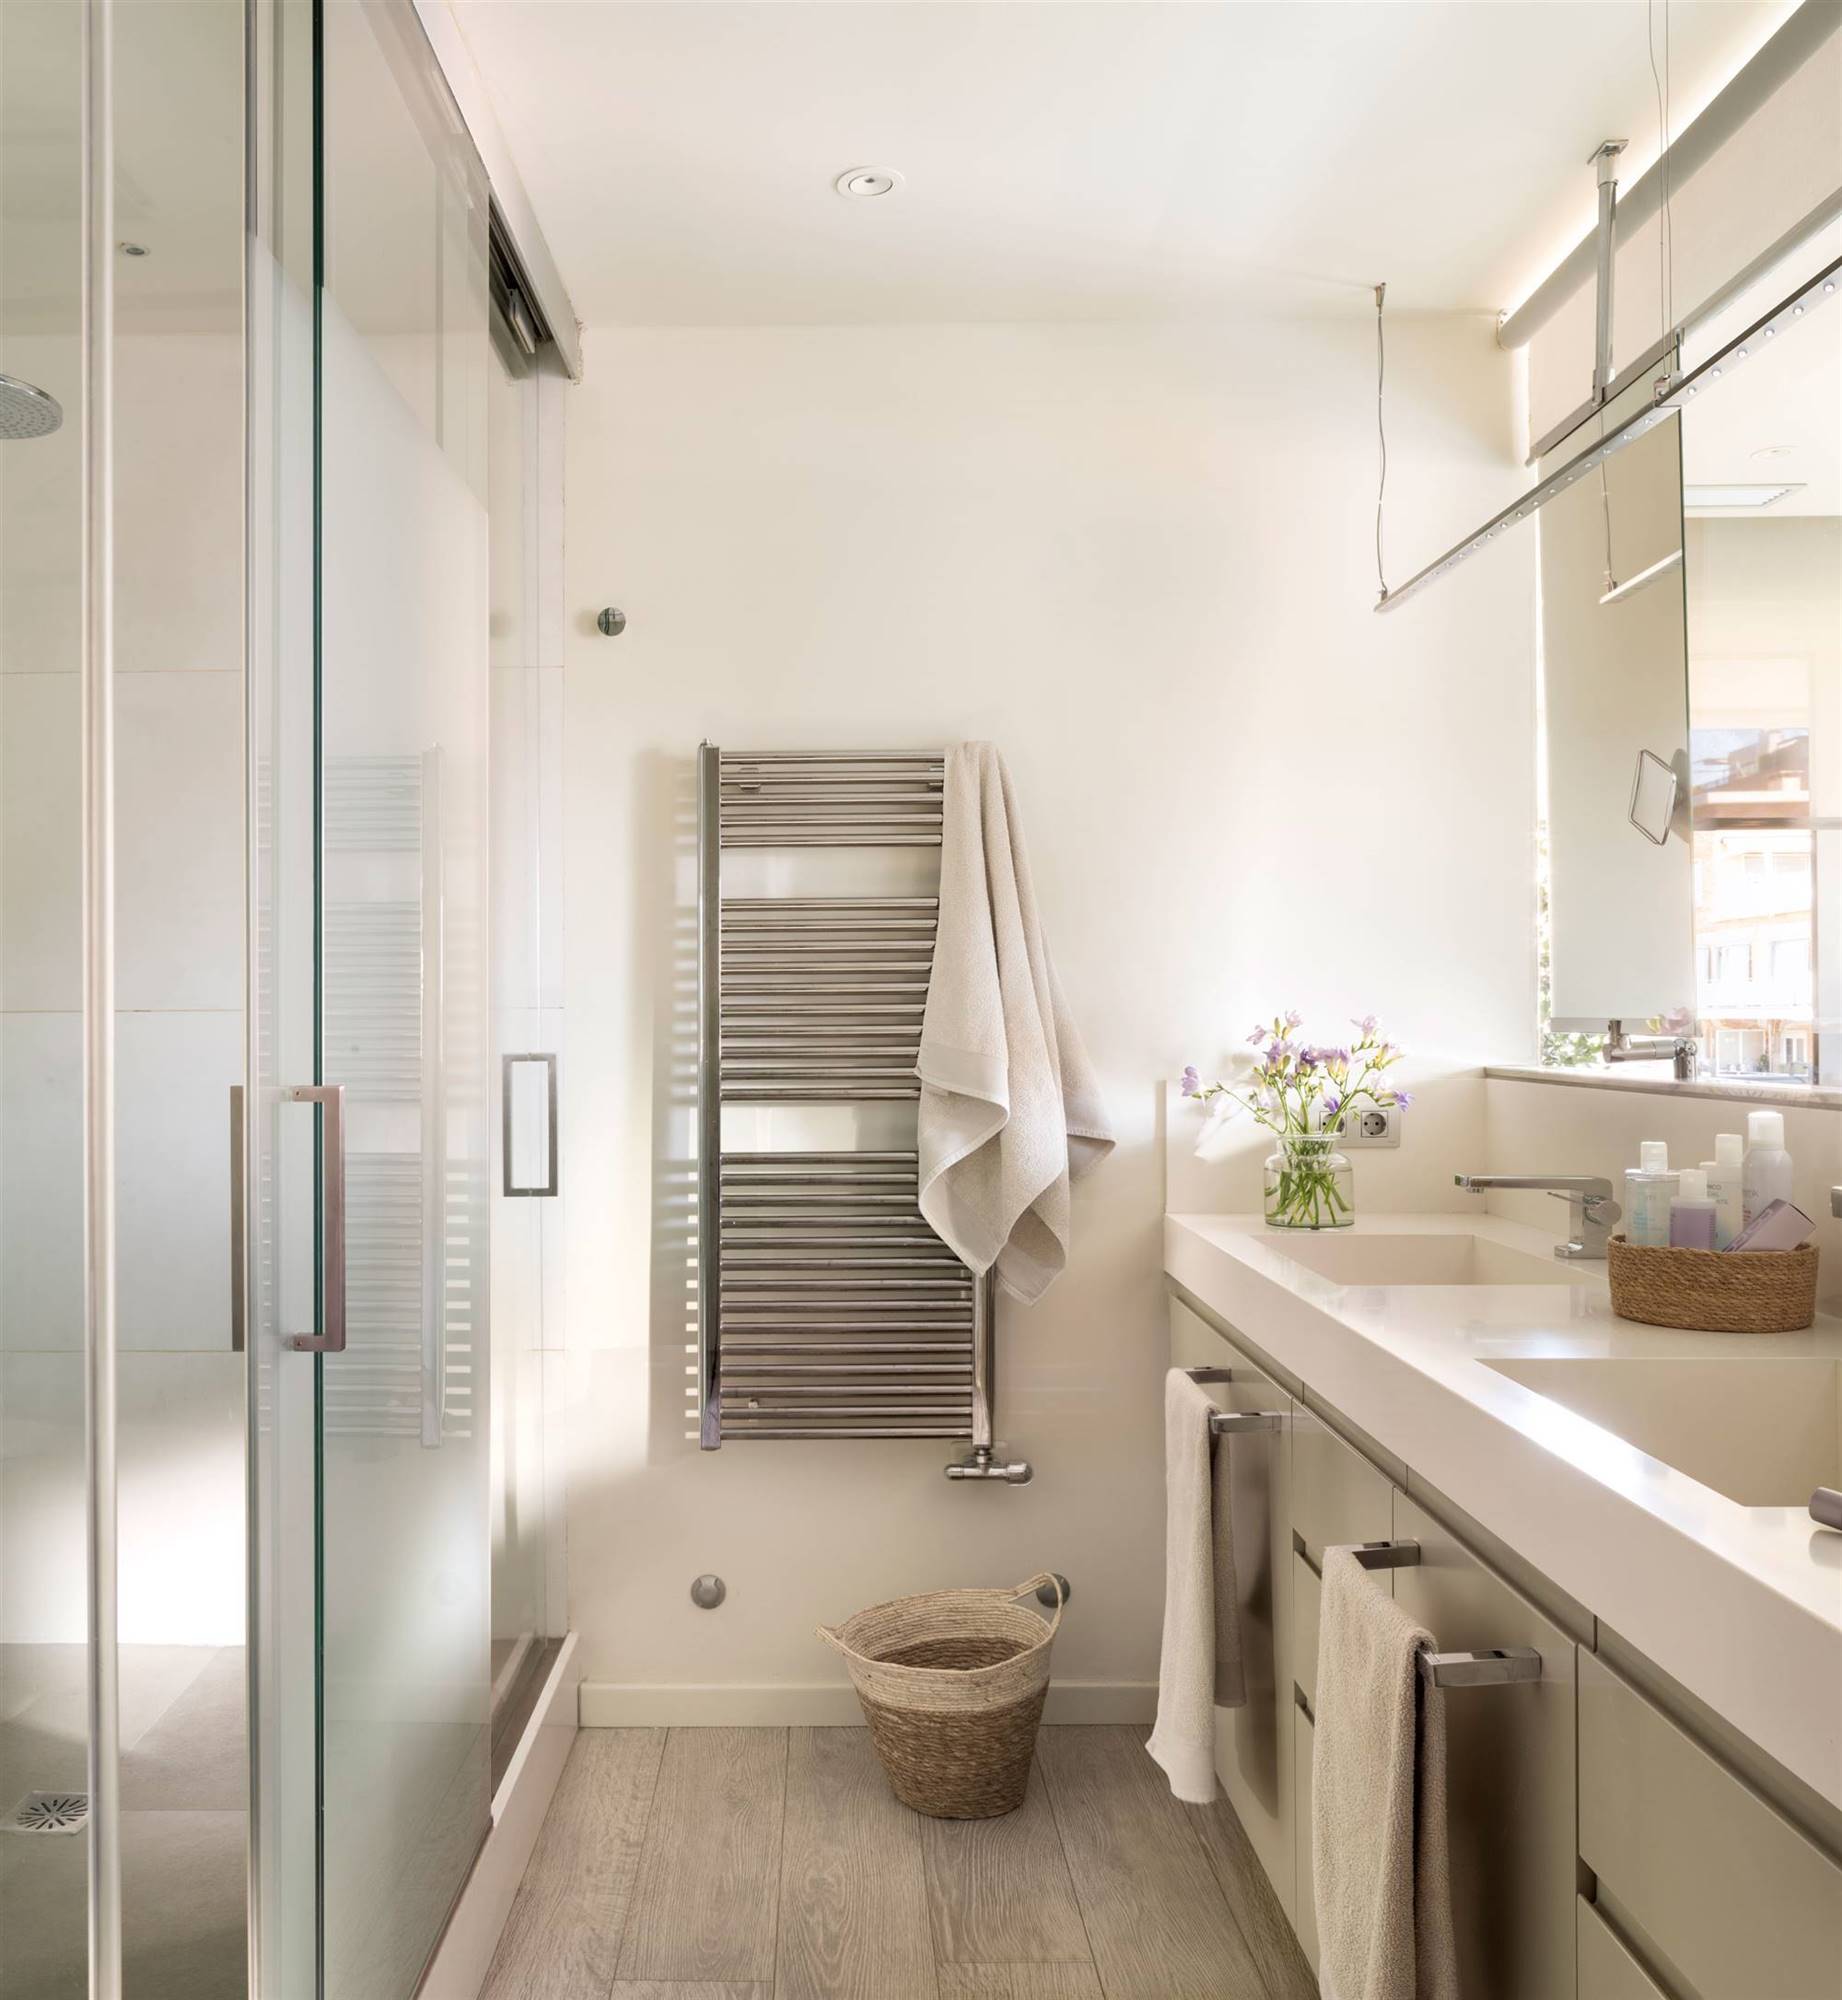 Baño con mueble a uno de los lados, cabinas con la ducha y el inodoro y toallero radiador. 